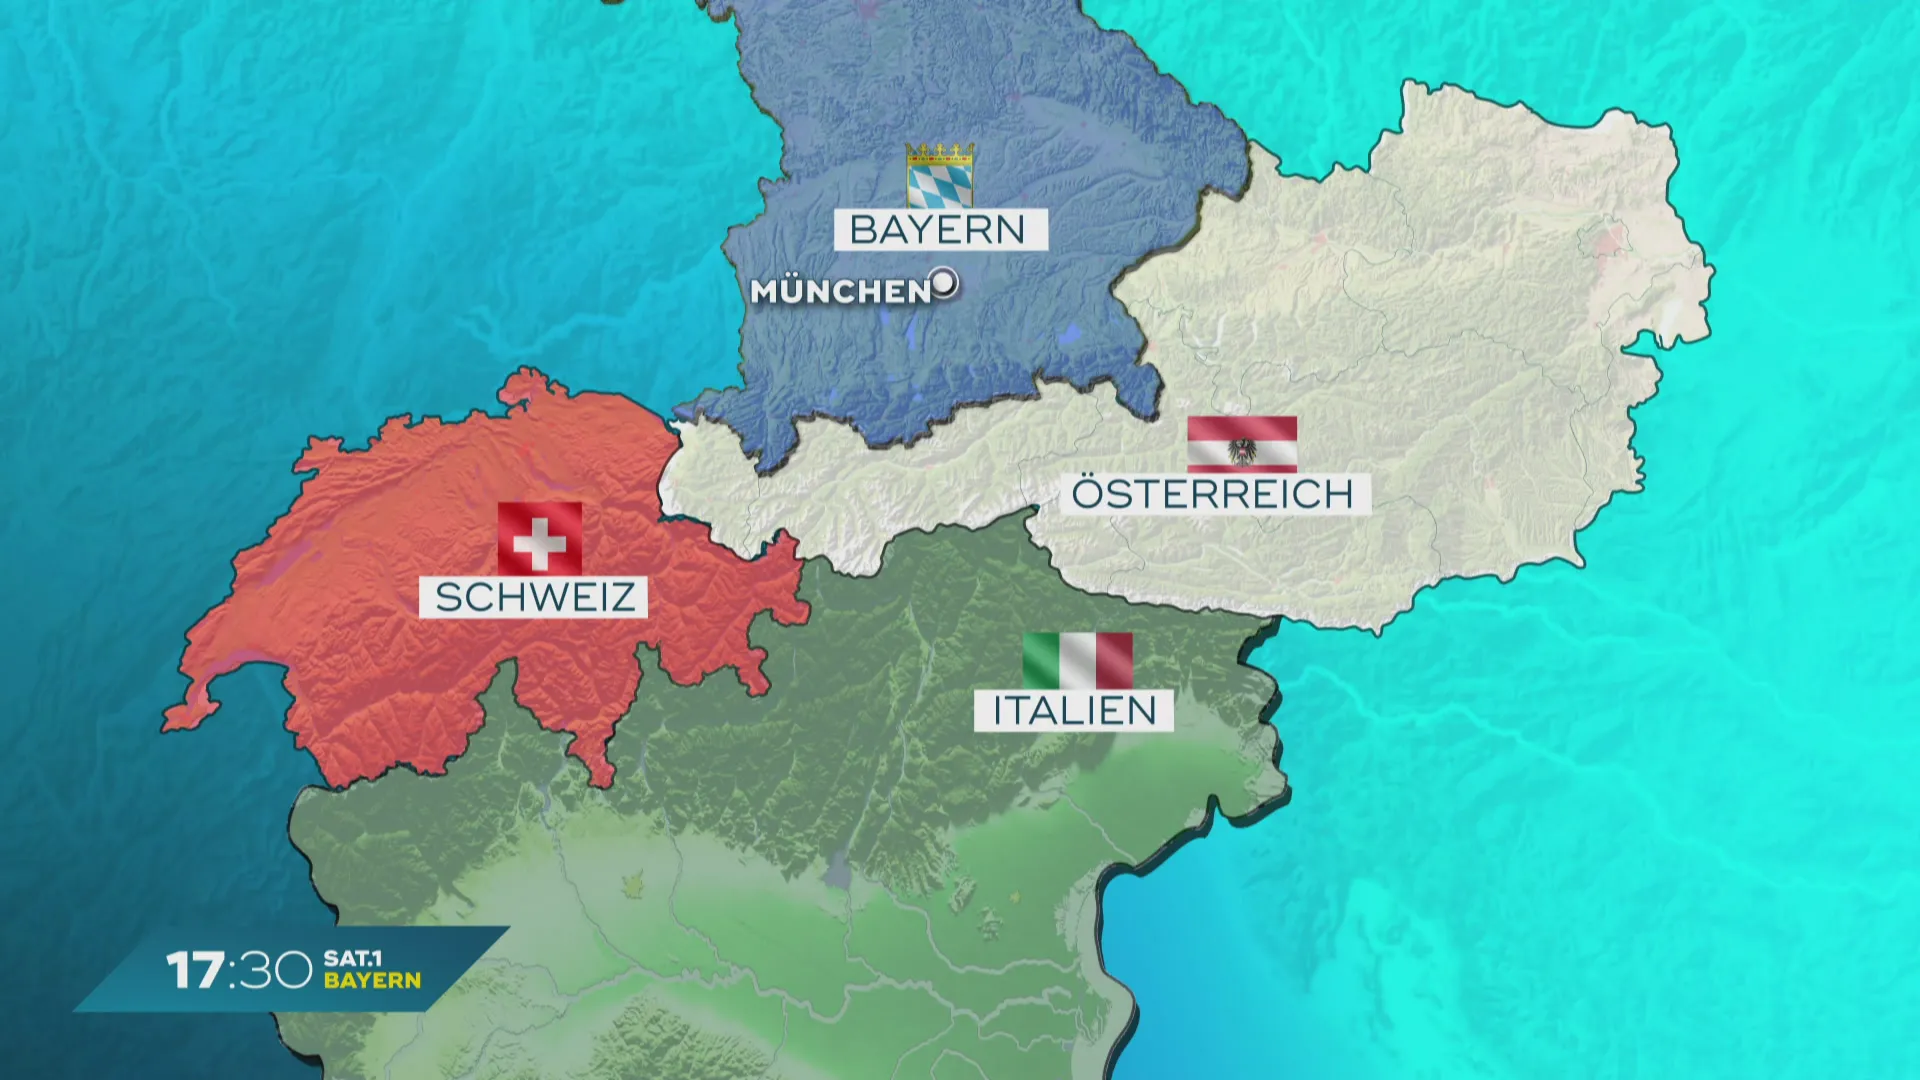 Braunbär gesichtet: Wandert er weiter nach Bayern?